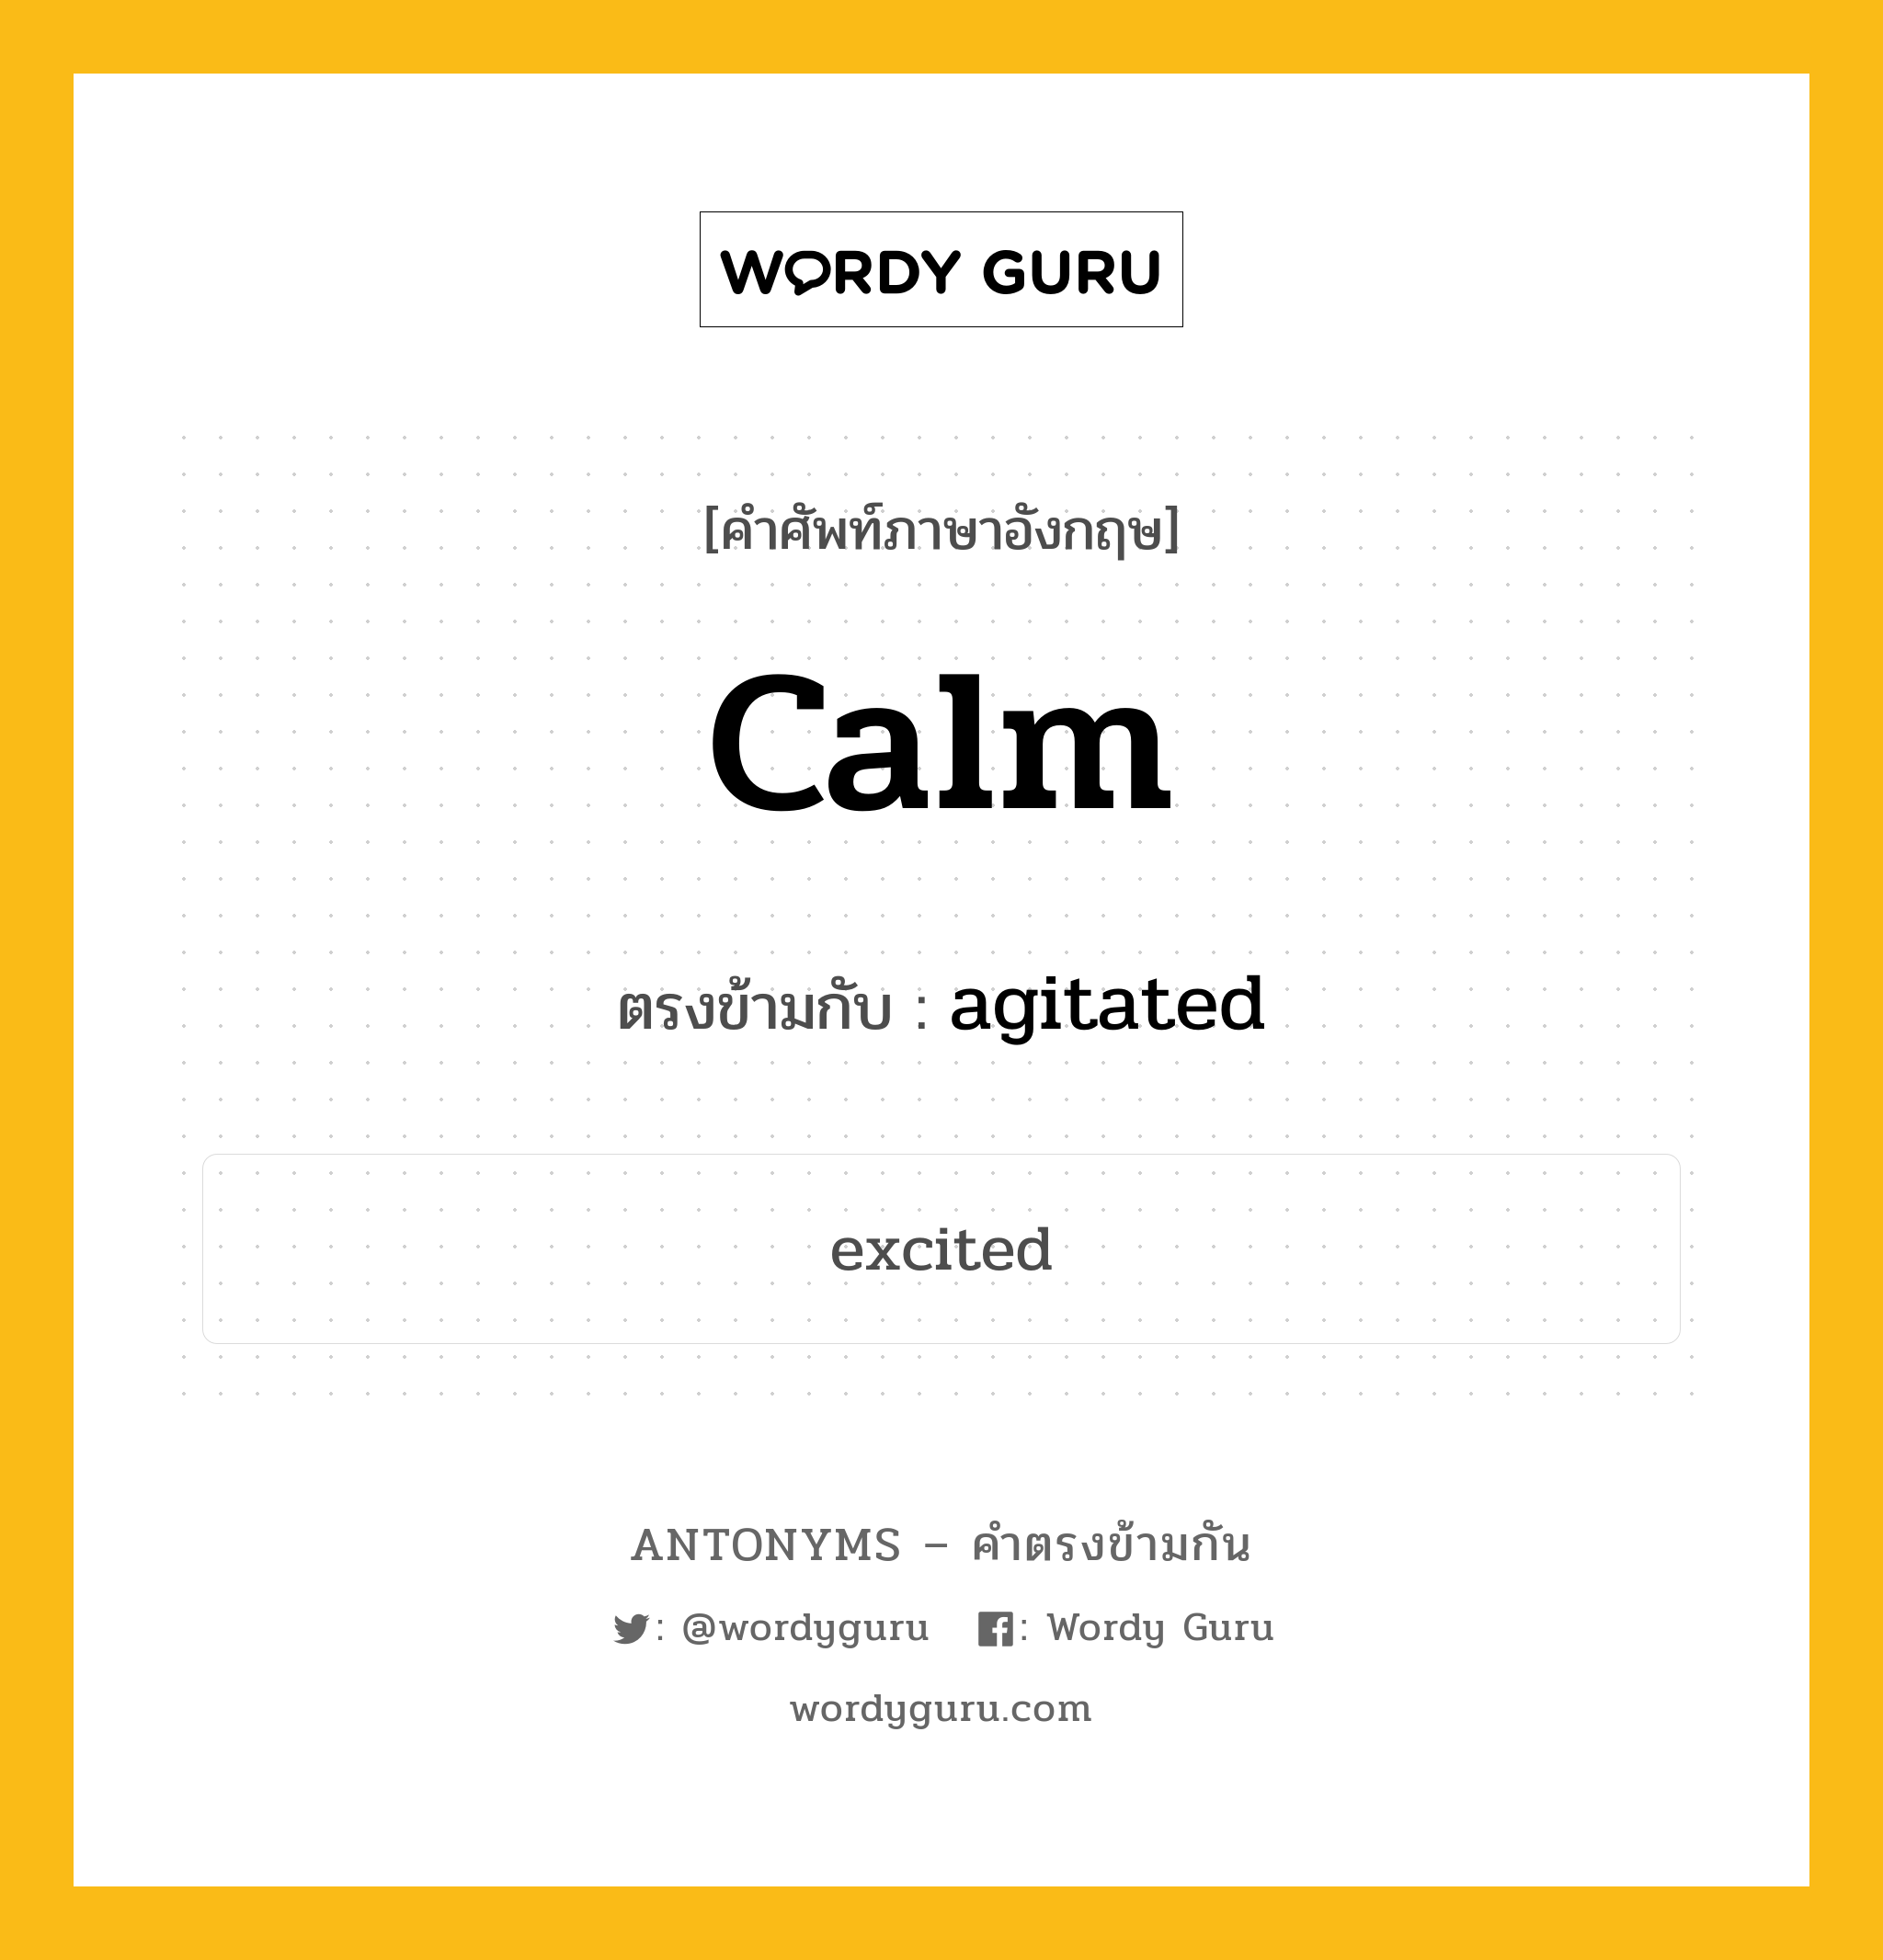 calm เป็นคำตรงข้ามกับคำไหนบ้าง?, คำศัพท์ภาษาอังกฤษ calm ตรงข้ามกับ agitated หมวด agitated